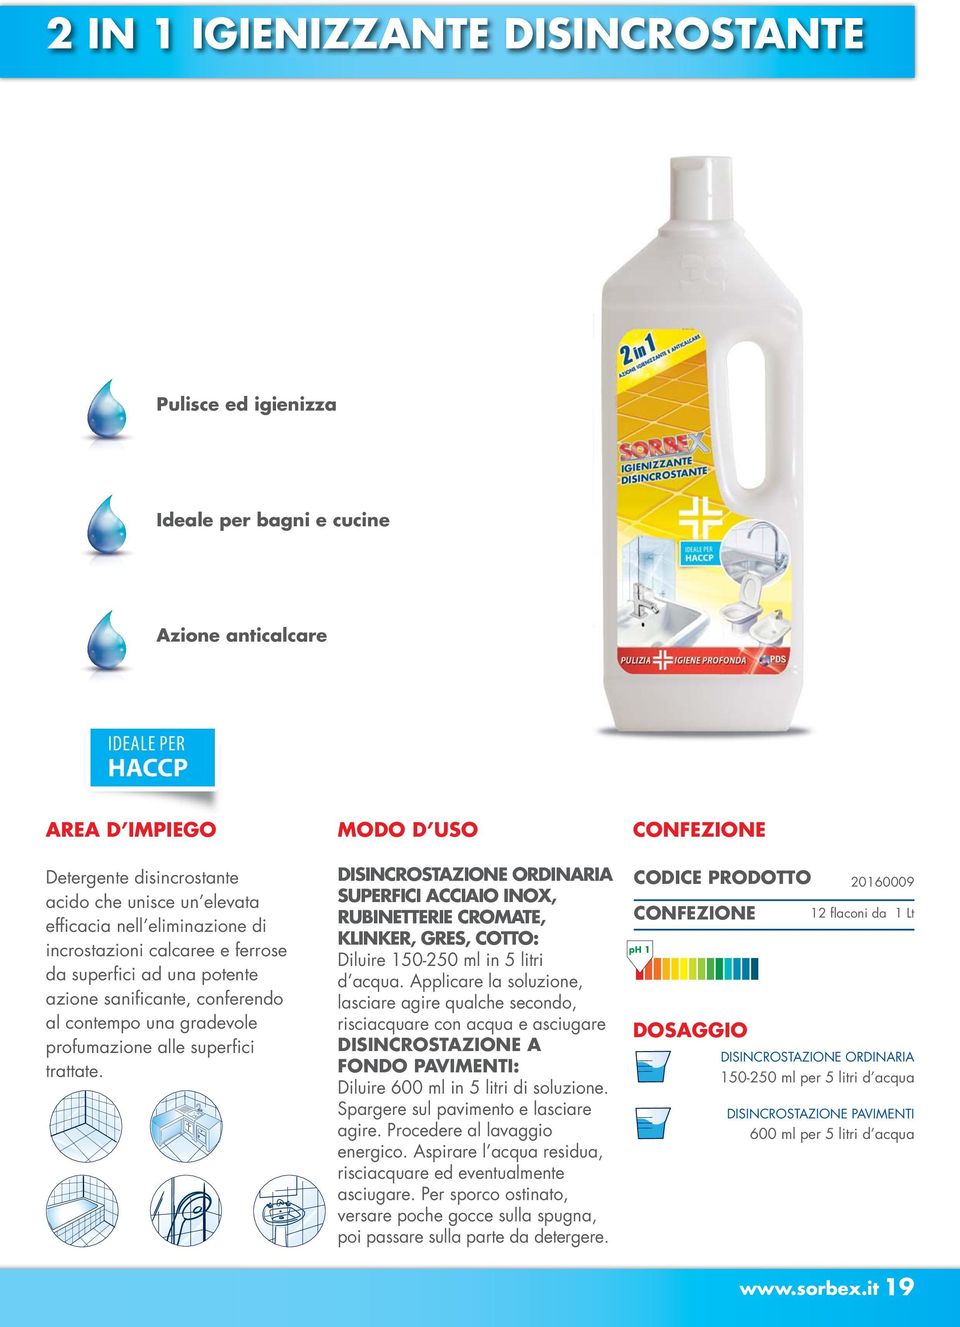 DISINCROSTAZIONE ORDINARIA SUPERFICI ACCIAIO INOX, RUBINETTERIE CROMATE, KLINKER, GRES, COTTO: Diluire 150-250 ml in 5 litri d acqua.